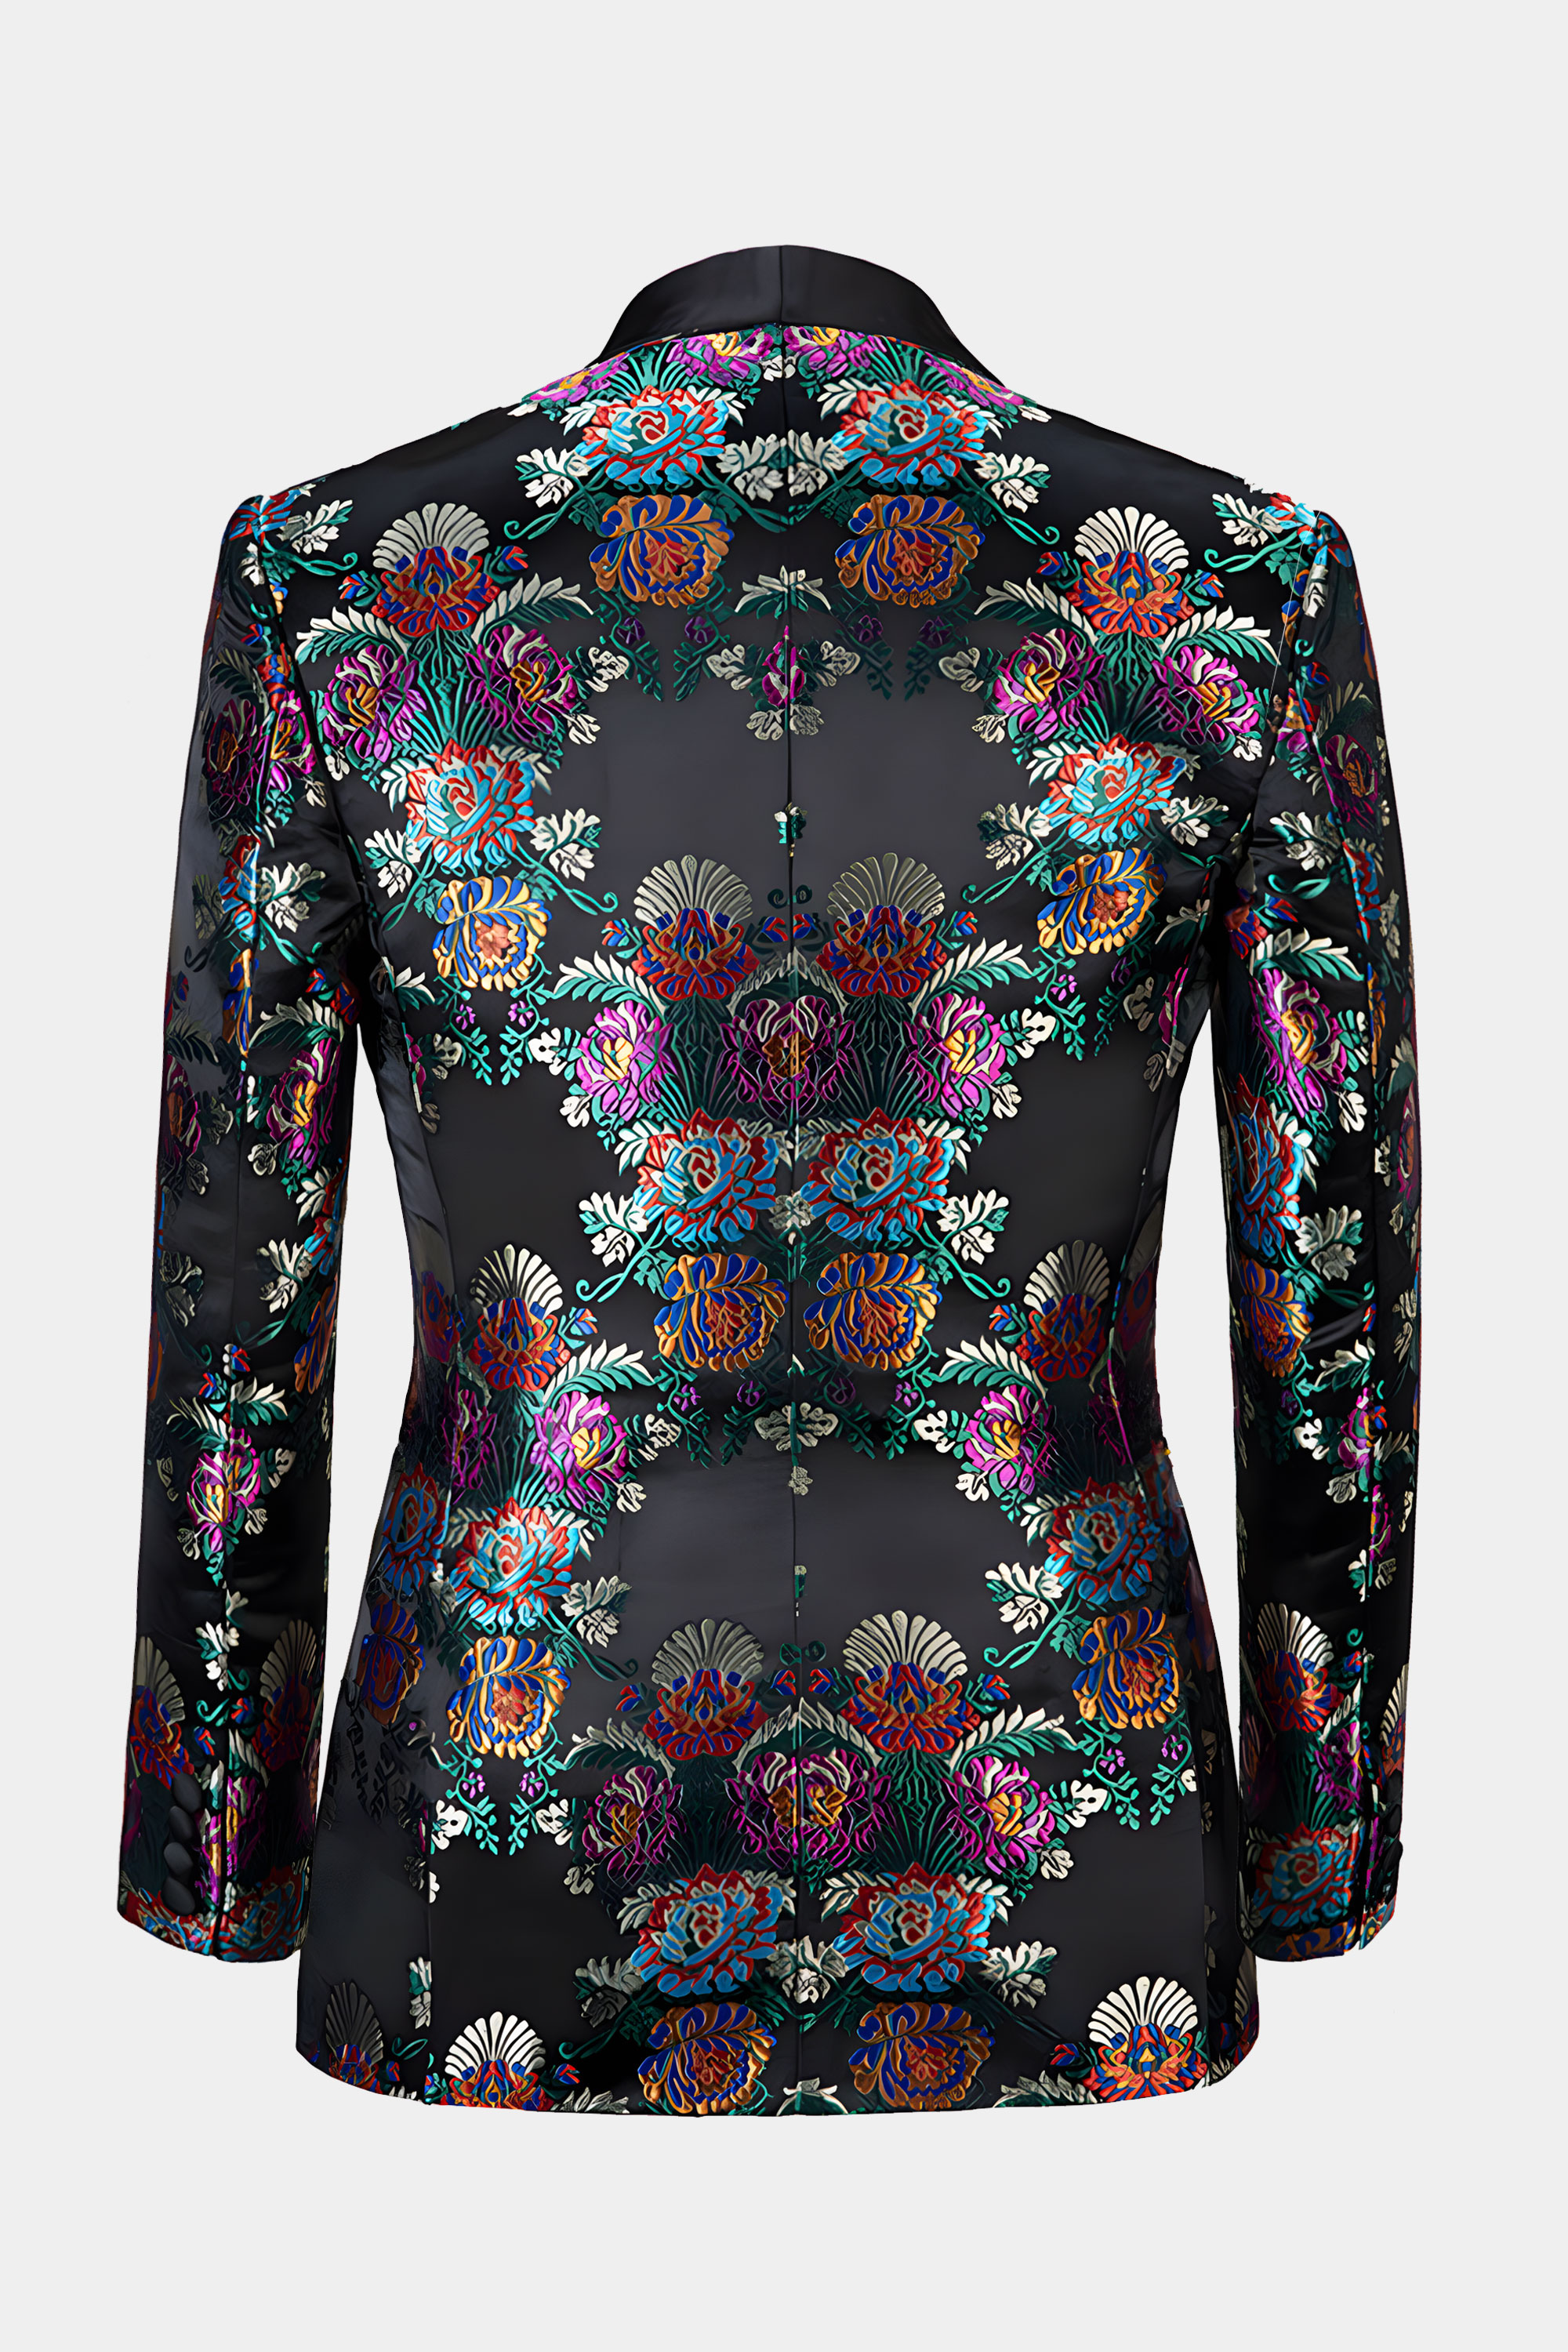 Multi-Color-Tuxedo-Jacket-from-Gentlemansguru.com